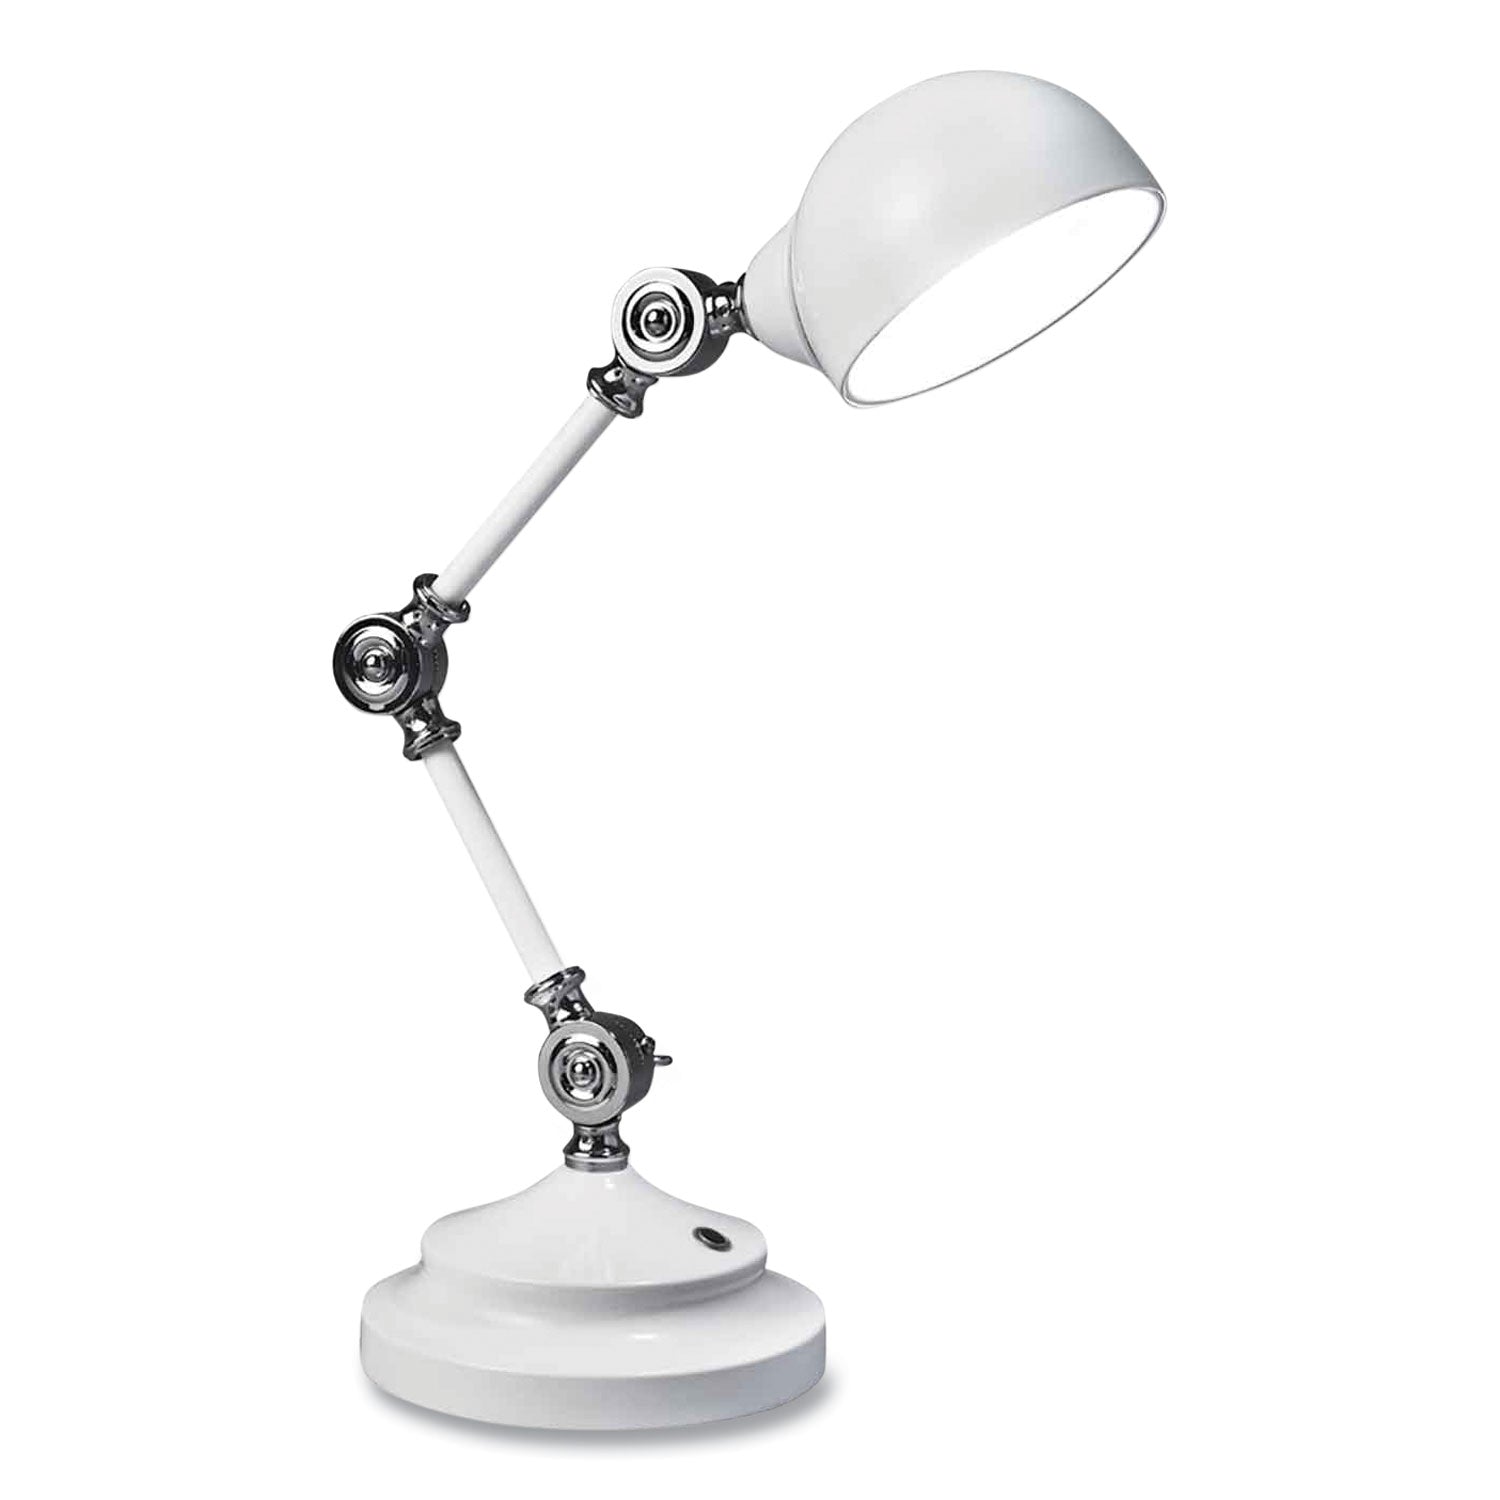 wellness-series-revive-led-desk-lamp-155-high-white-ships-in-4-6-business-days_ottf1485009shpr - 1